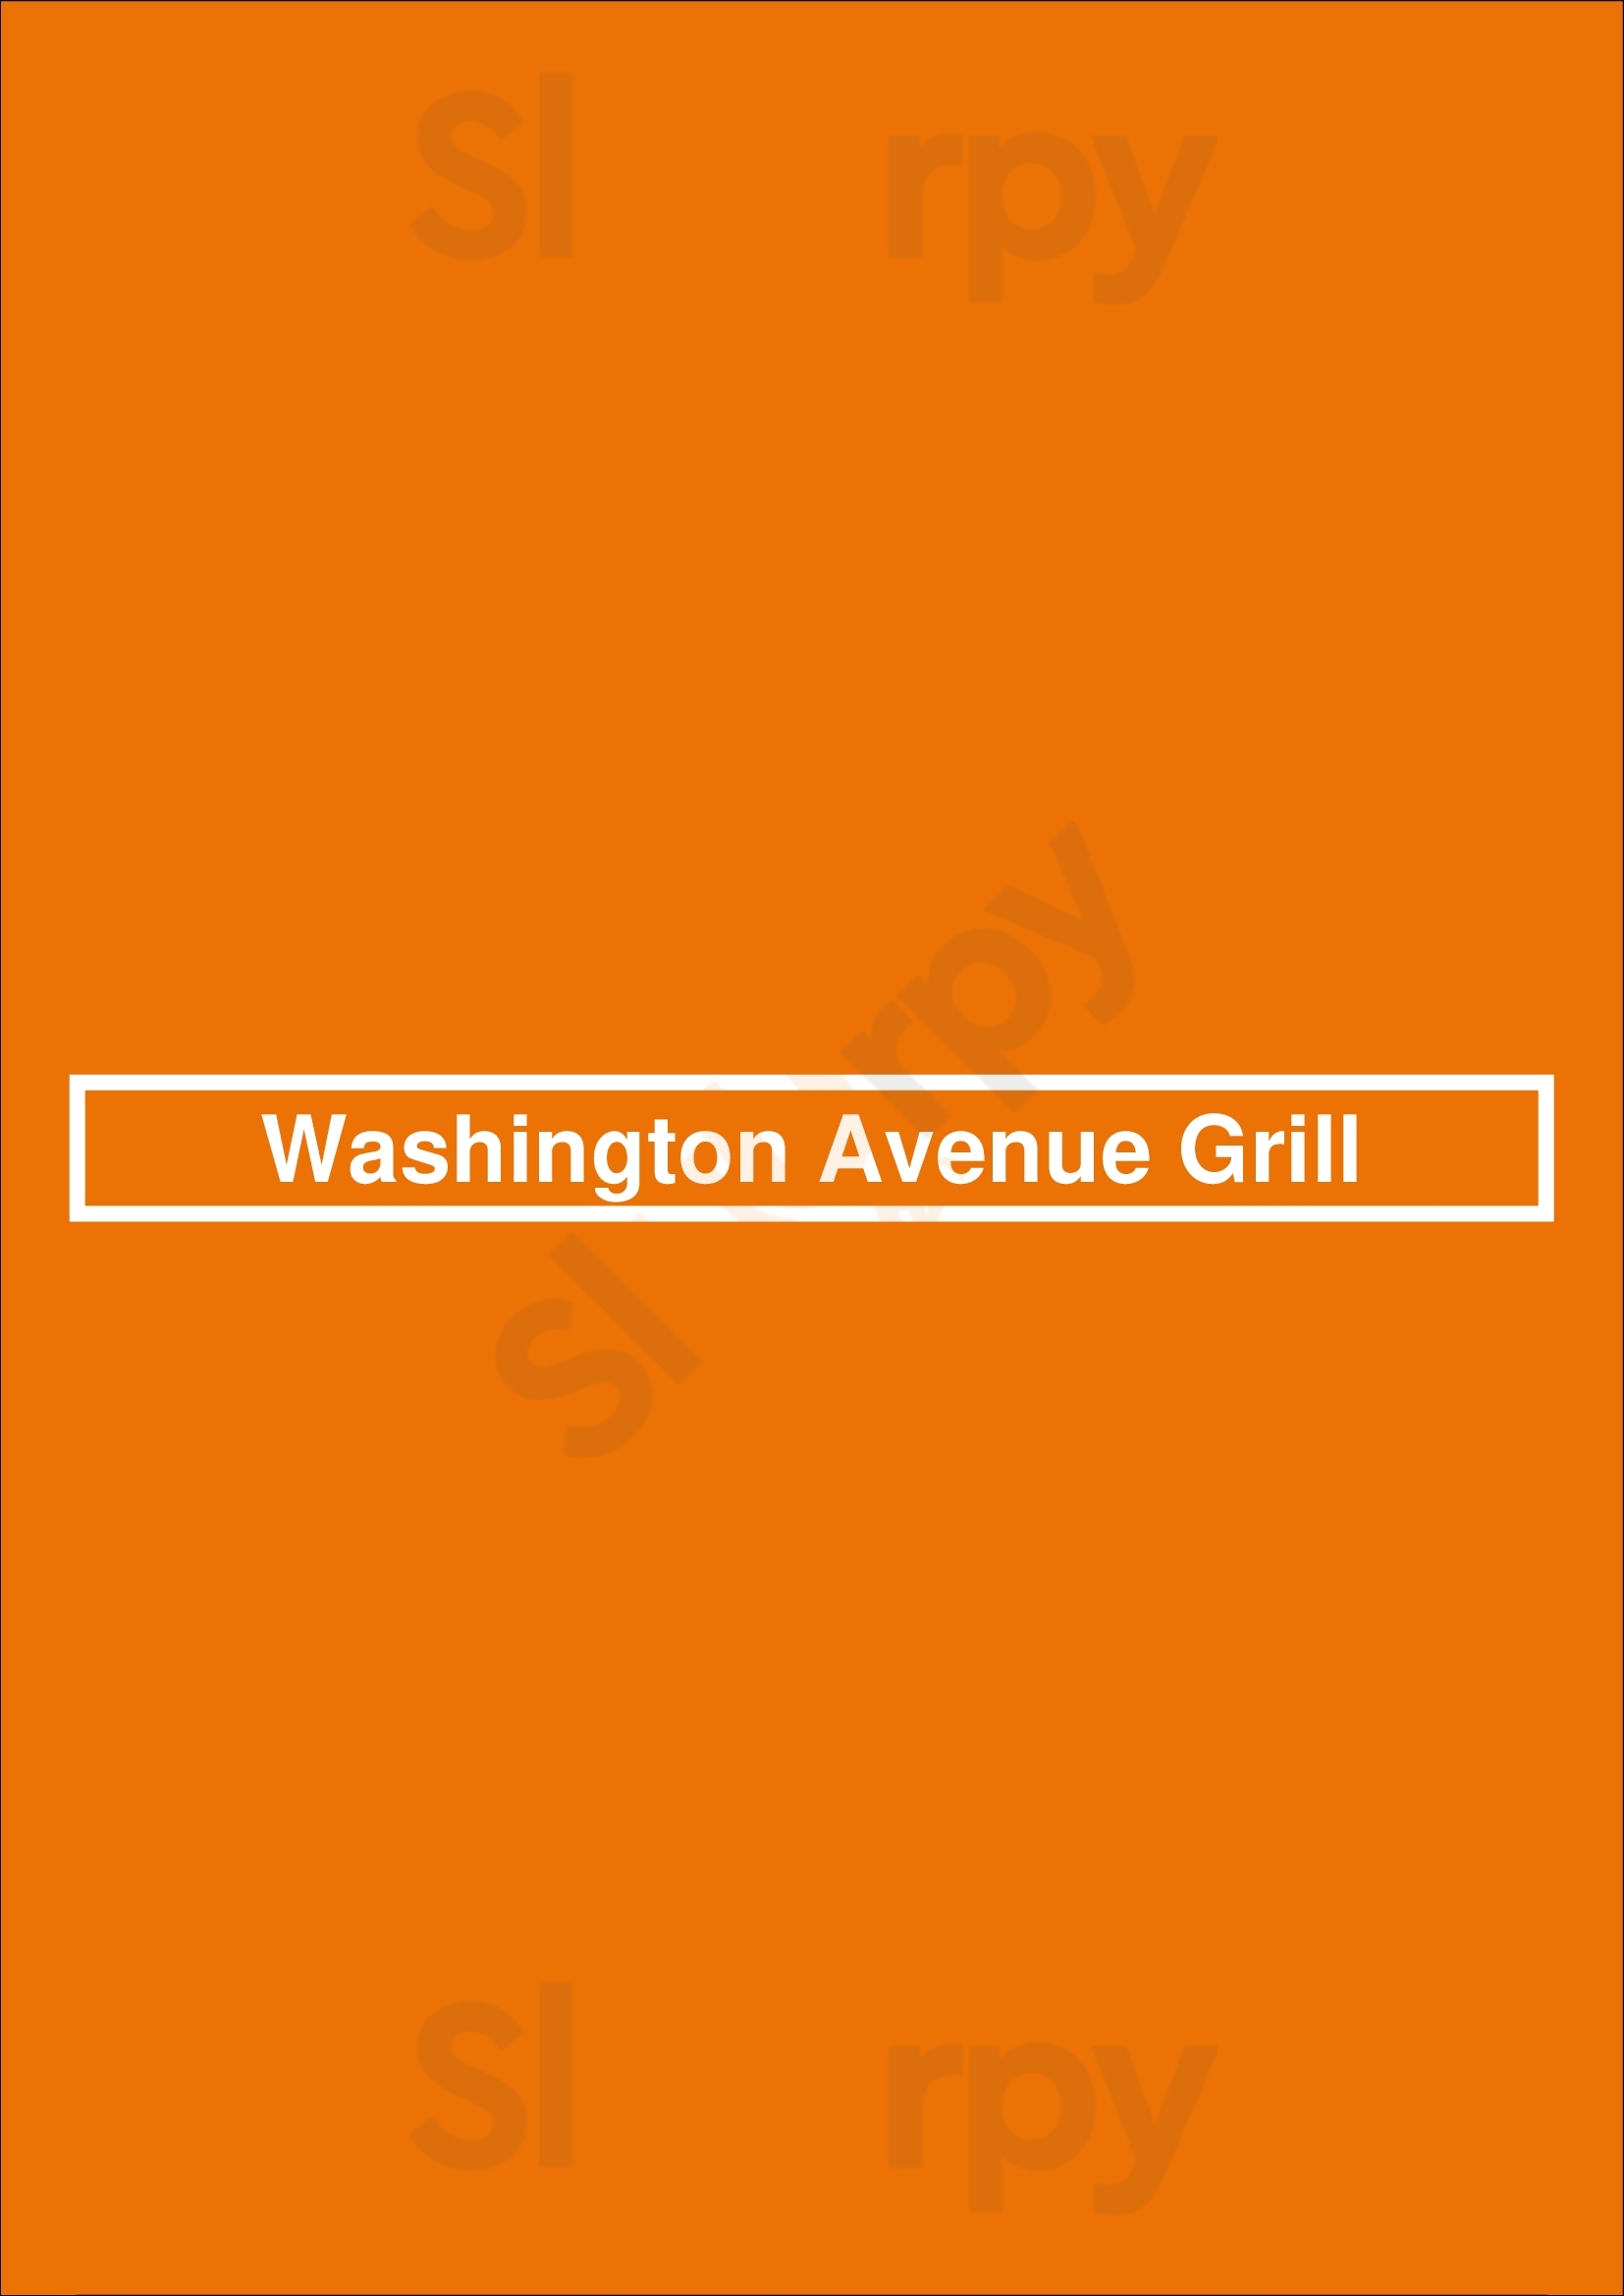 Washington Avenue Grill Surrey Menu - 1